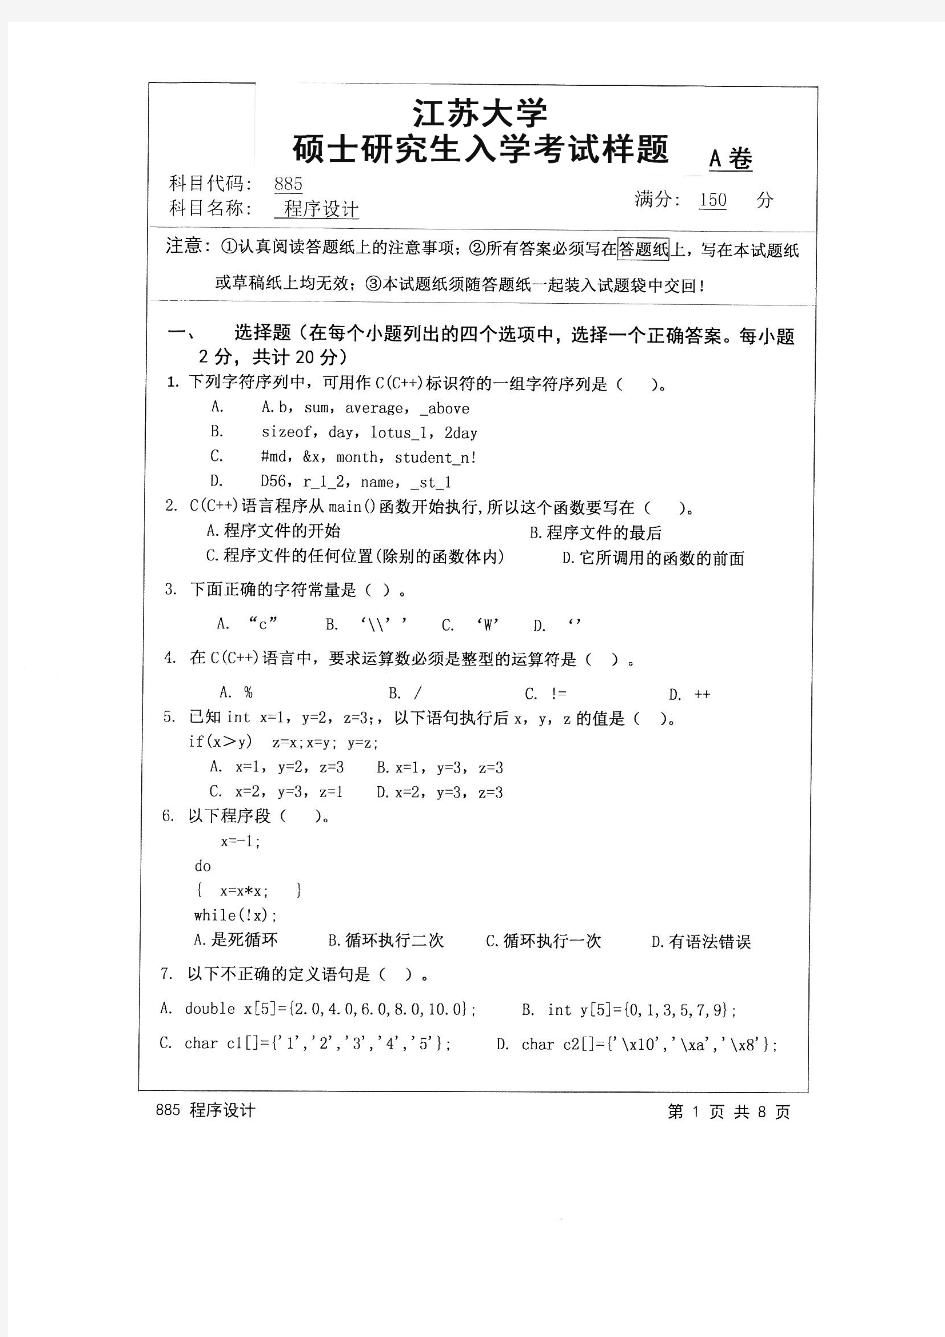 江苏大学2016年《885程序设计》考研专业课真题试卷